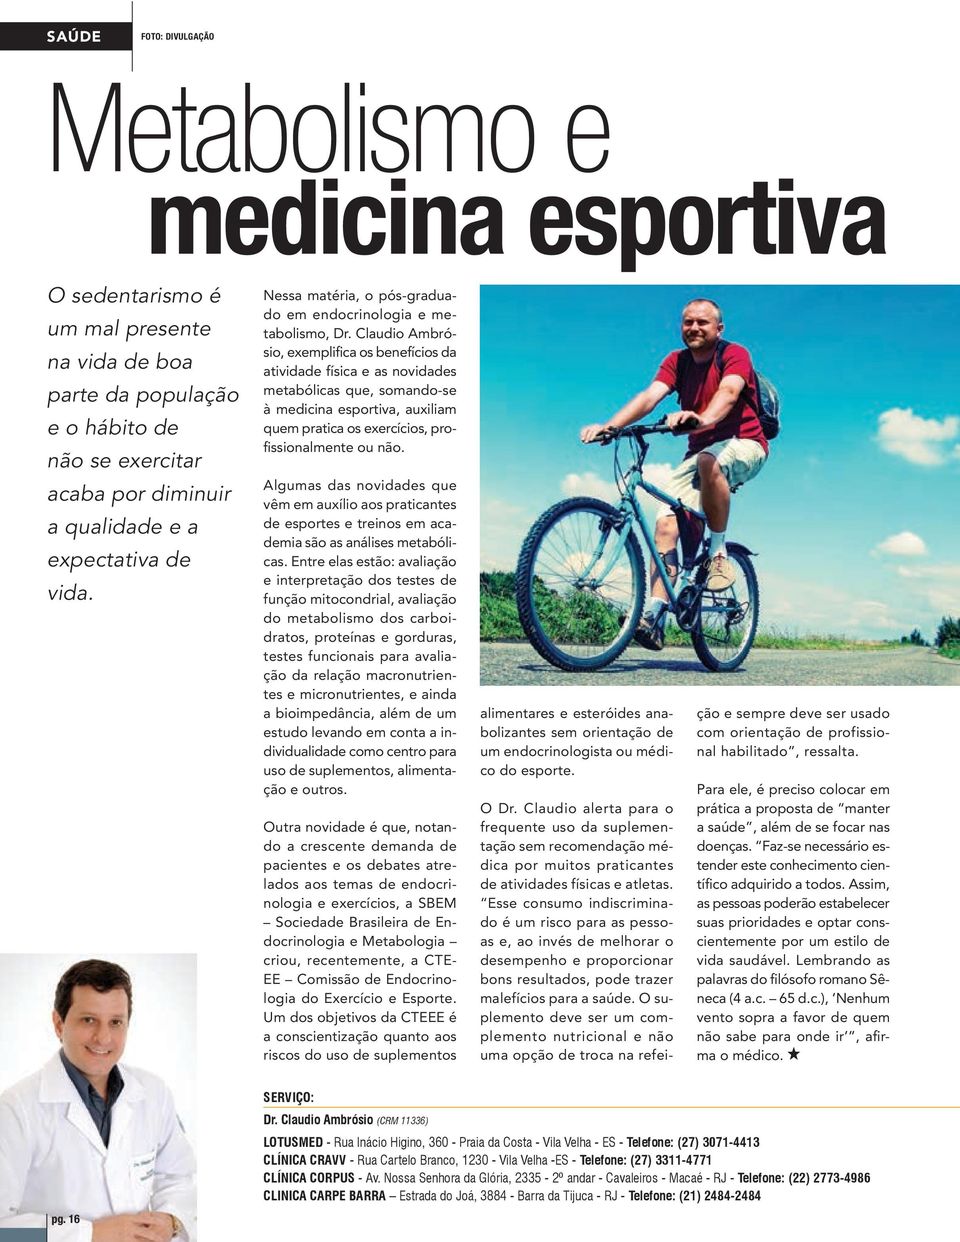 Claudio Ambrósio, exemplifica os benefícios da atividade física e as novidades metabólicas que, somando-se à medicina esportiva, auxiliam quem pratica os exercícios, profissionalmente ou não.